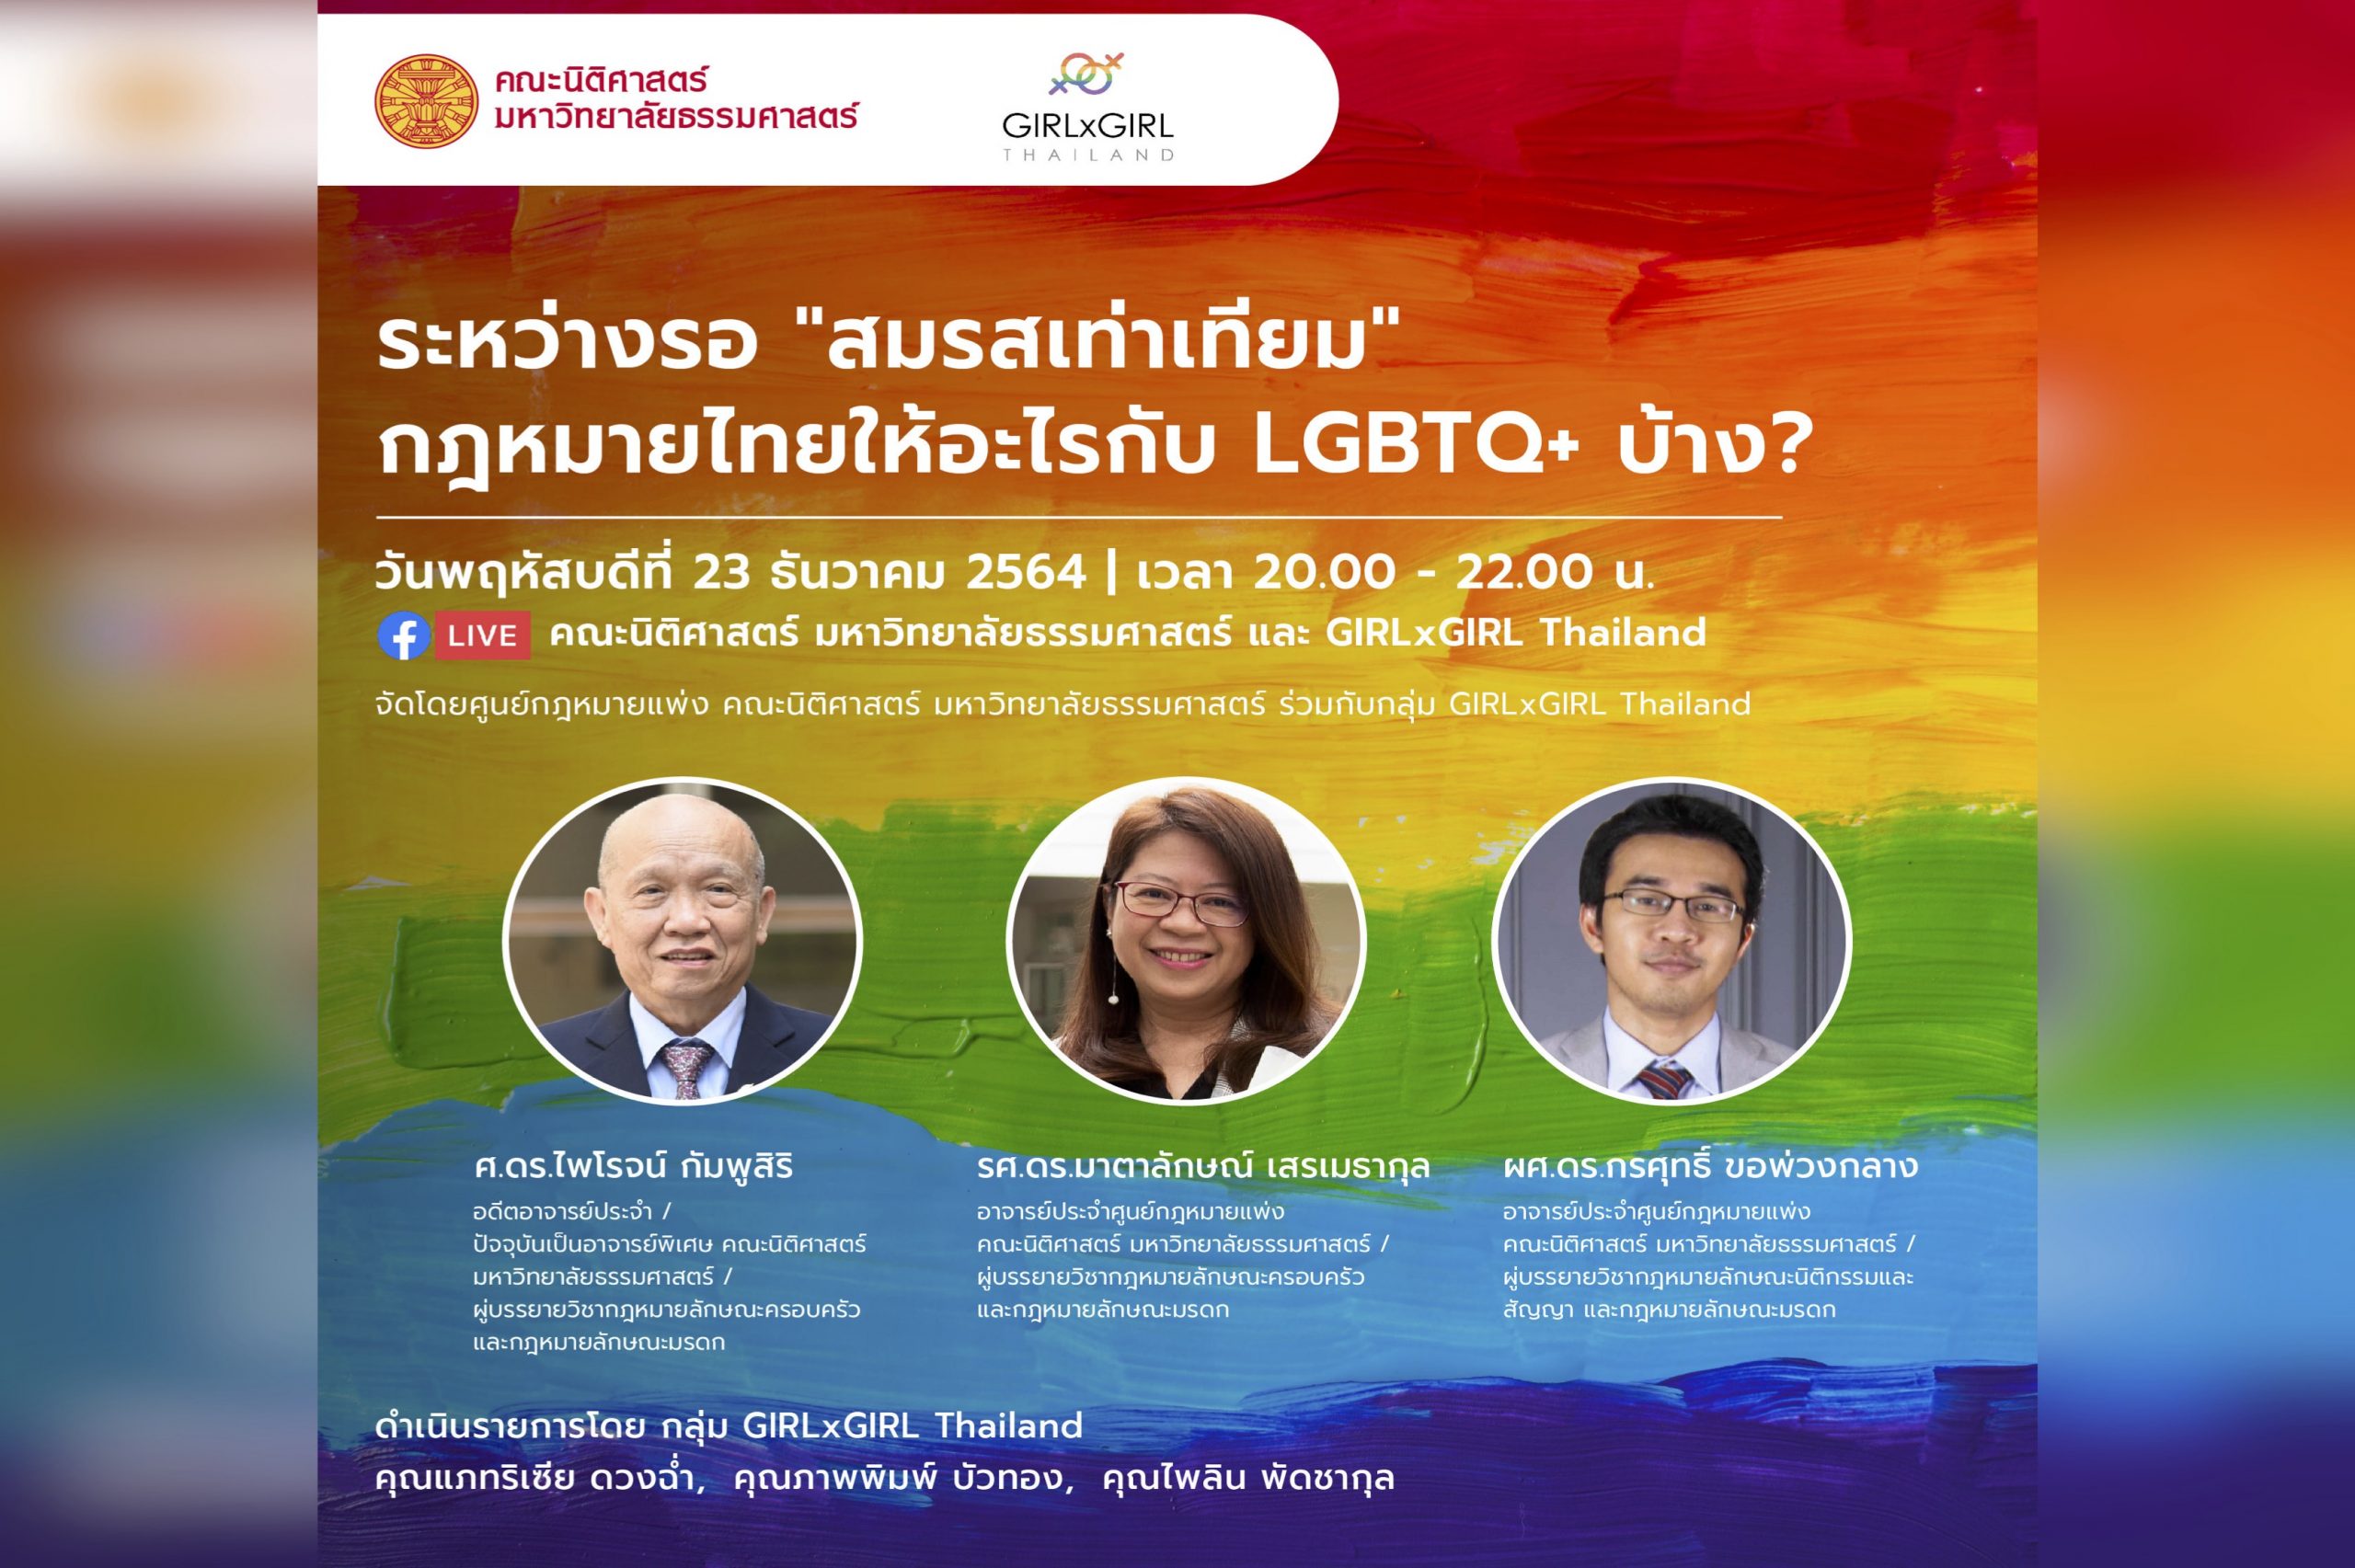 ขอเชิญเข้าร่วมเสวนาวิชาการ “ระหว่างรอ “สมรสเท่าเทียม” กฎหมายไทยให้อะไรกับ LGBTQ+ บ้าง?”